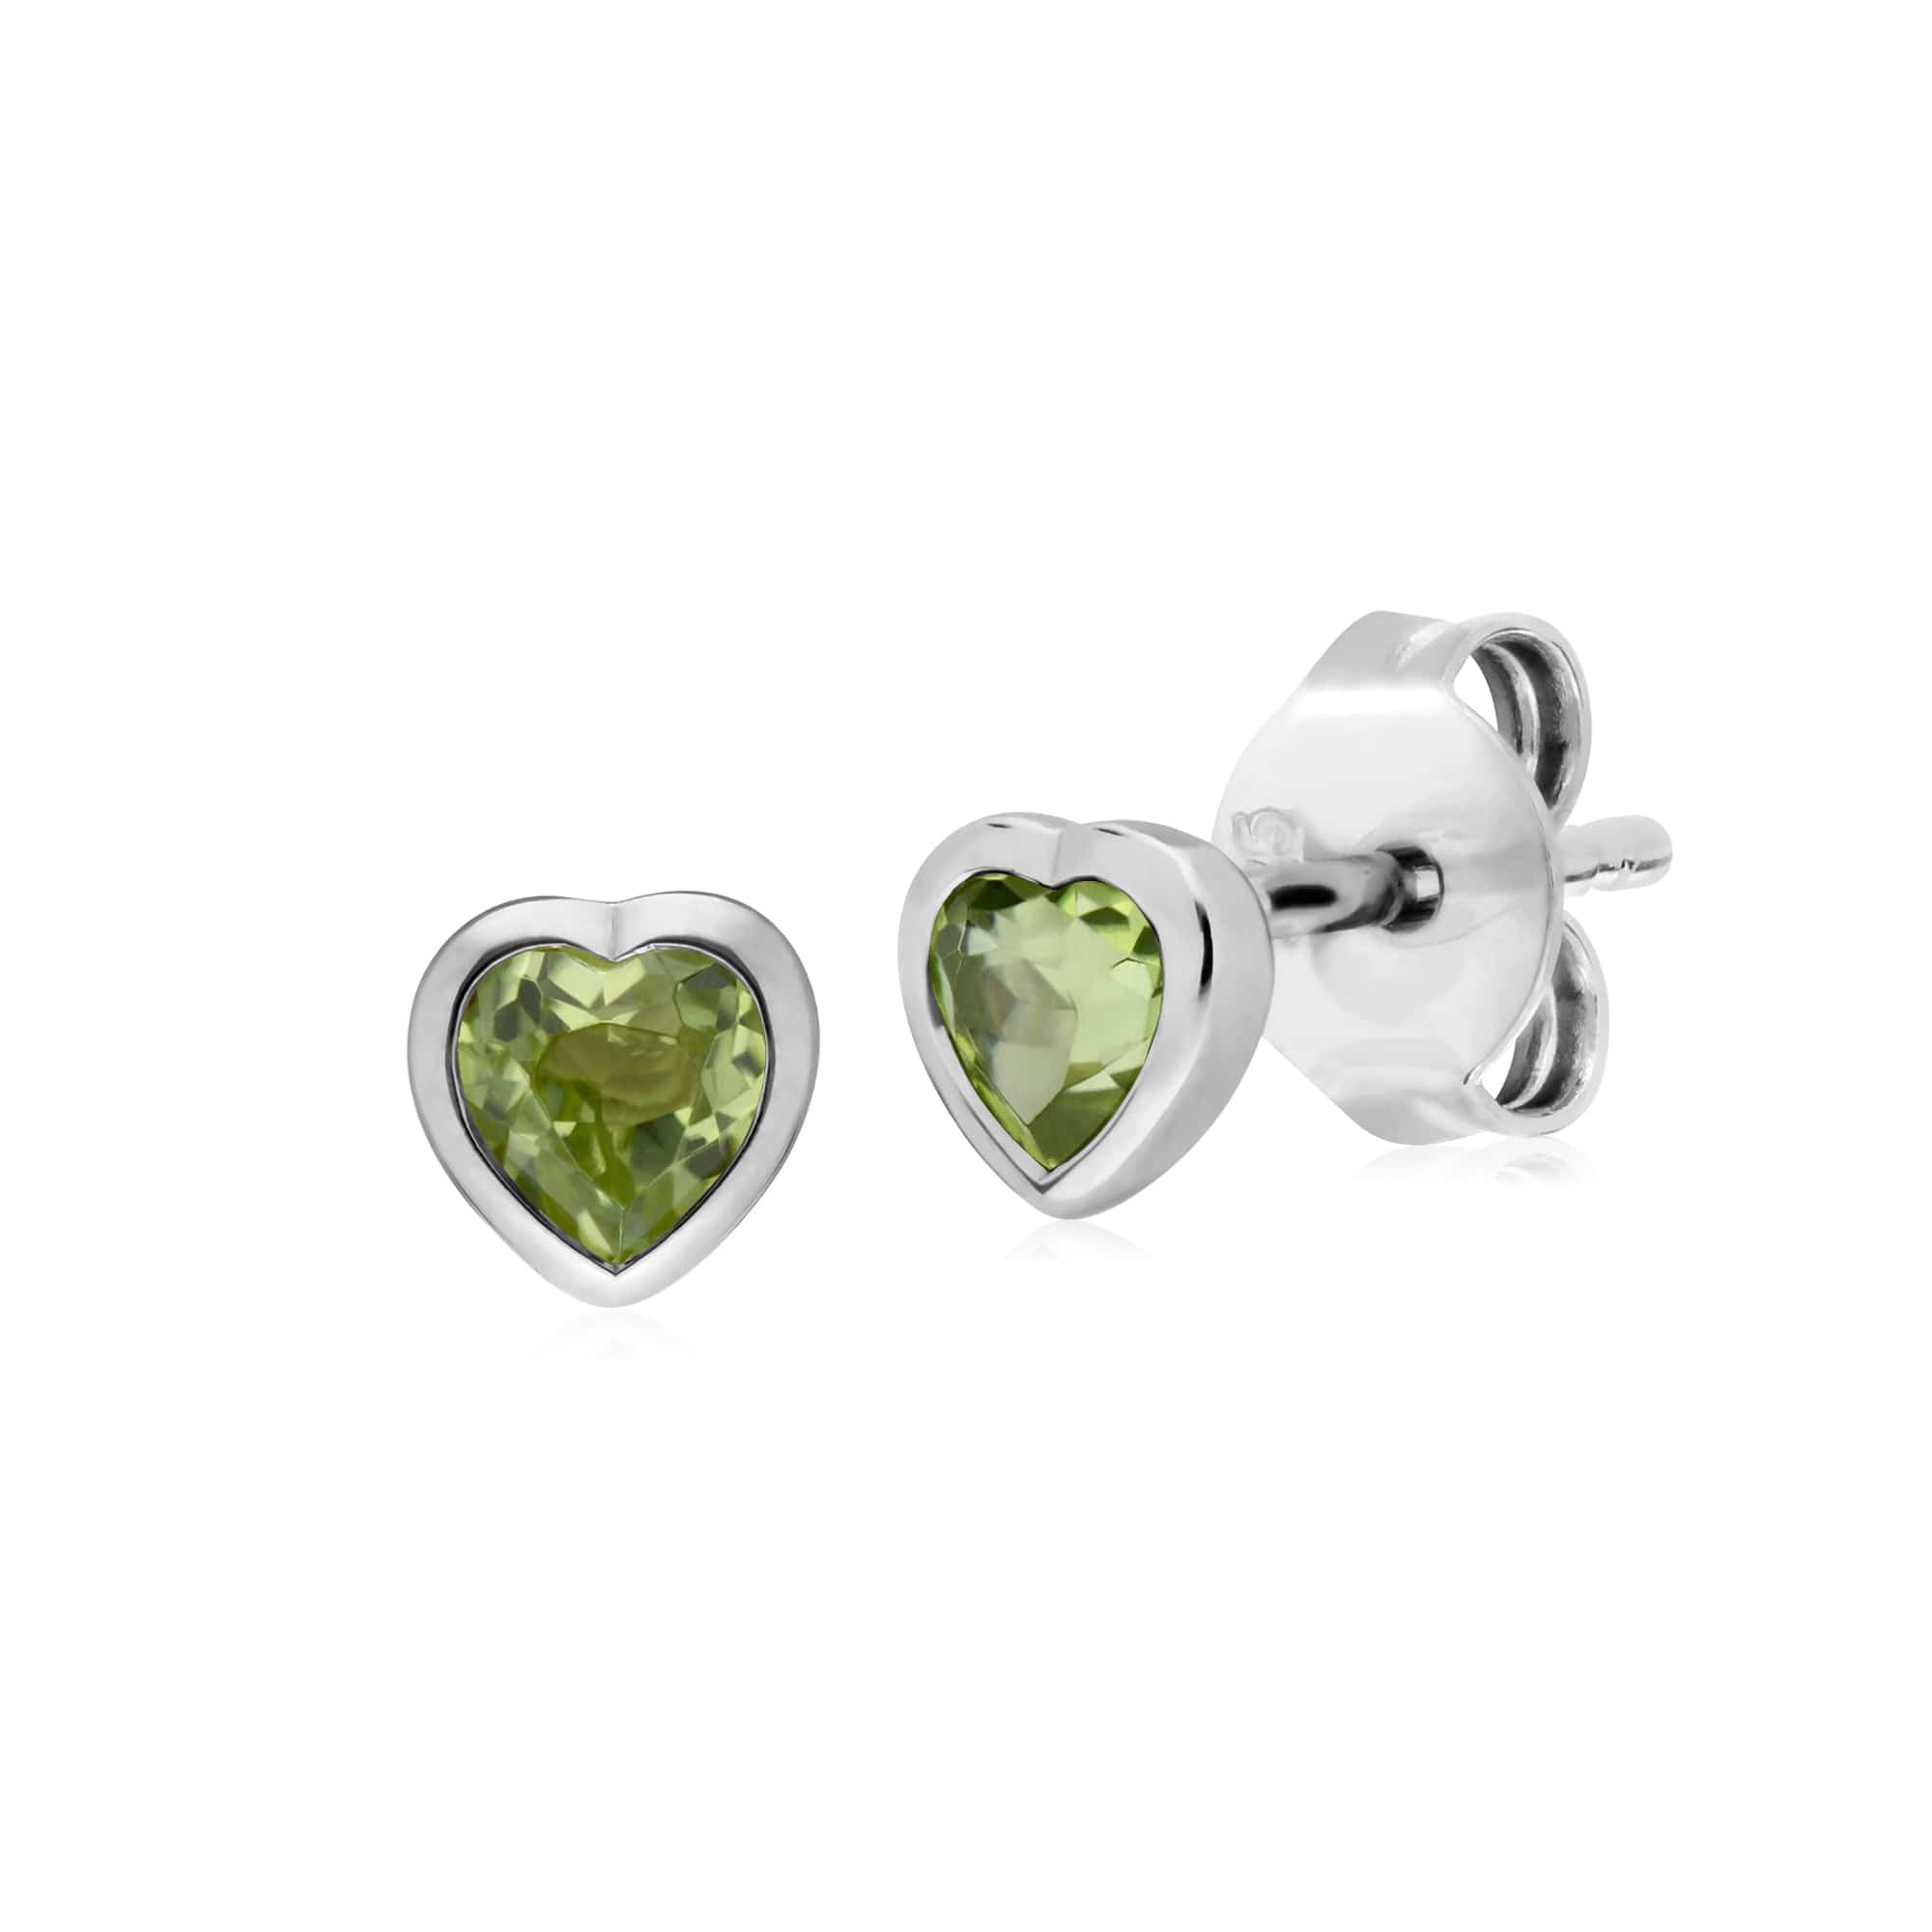 270E026104925-270P028704925 Classic Heart Peridot Stud Earrings & Pendant Set in 925 Sterling Silver 2